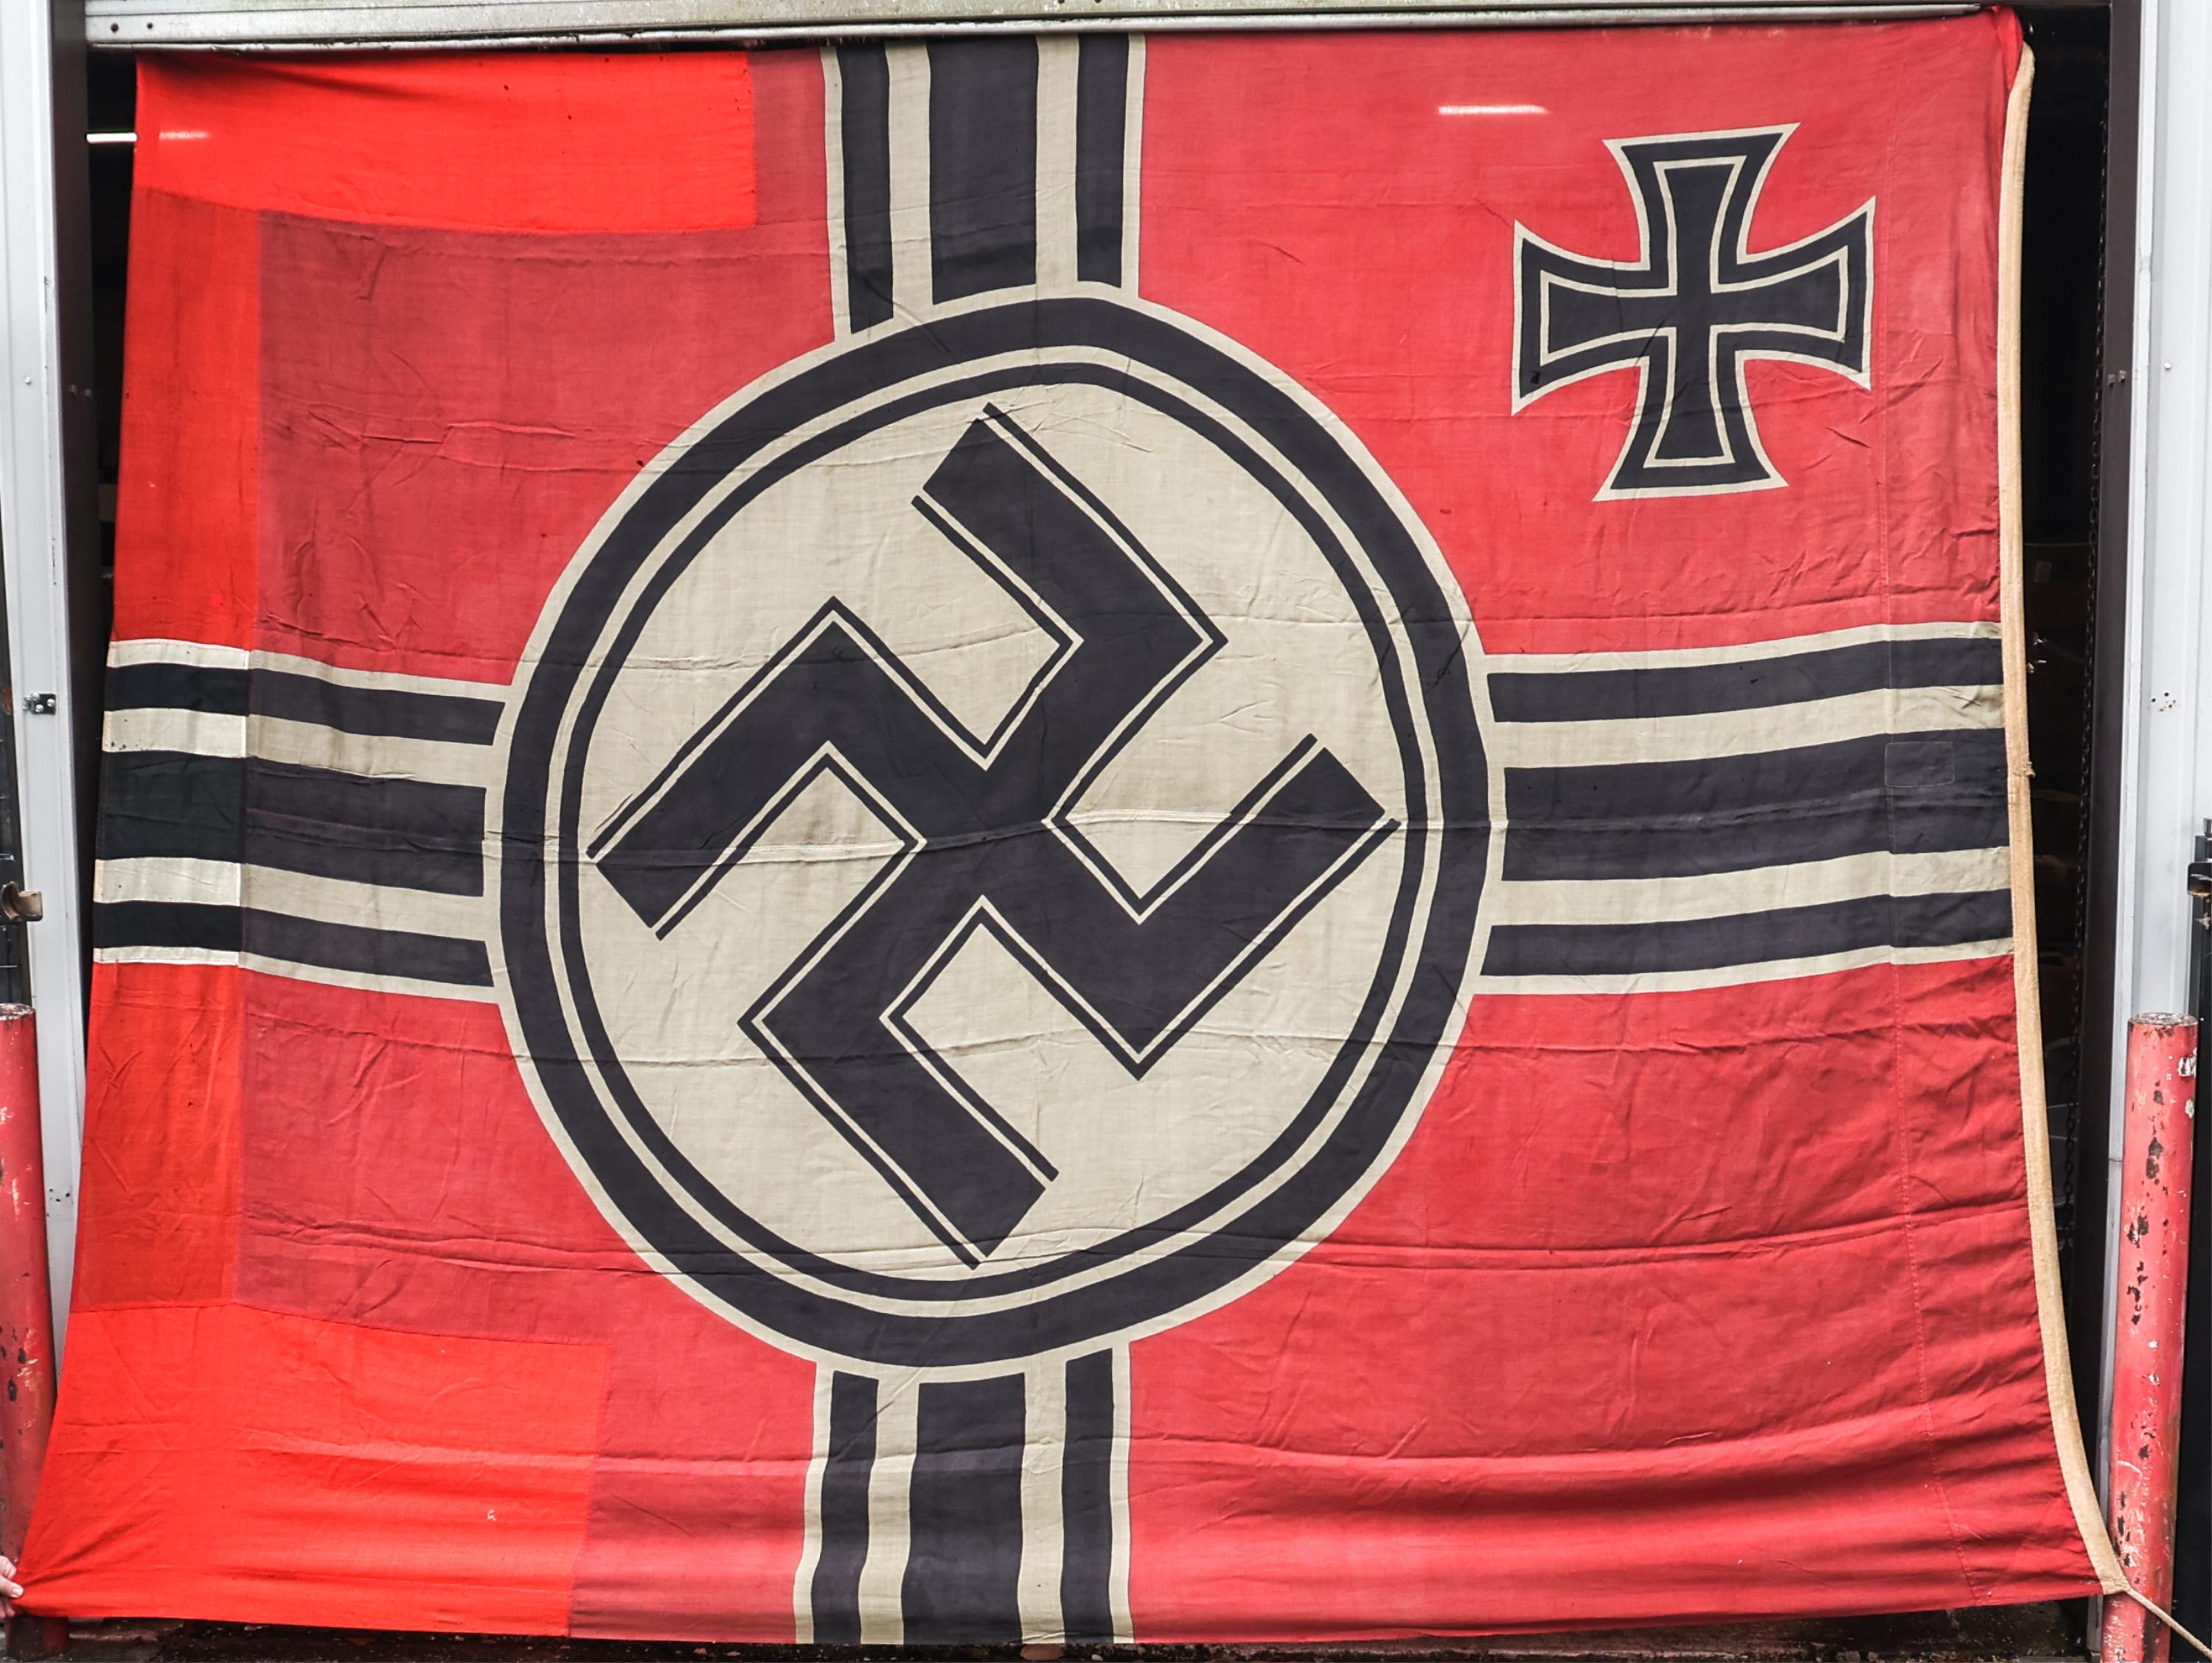 WWII GERMAN KRIEGSMARINE DESTROYER BATTLE FLAG